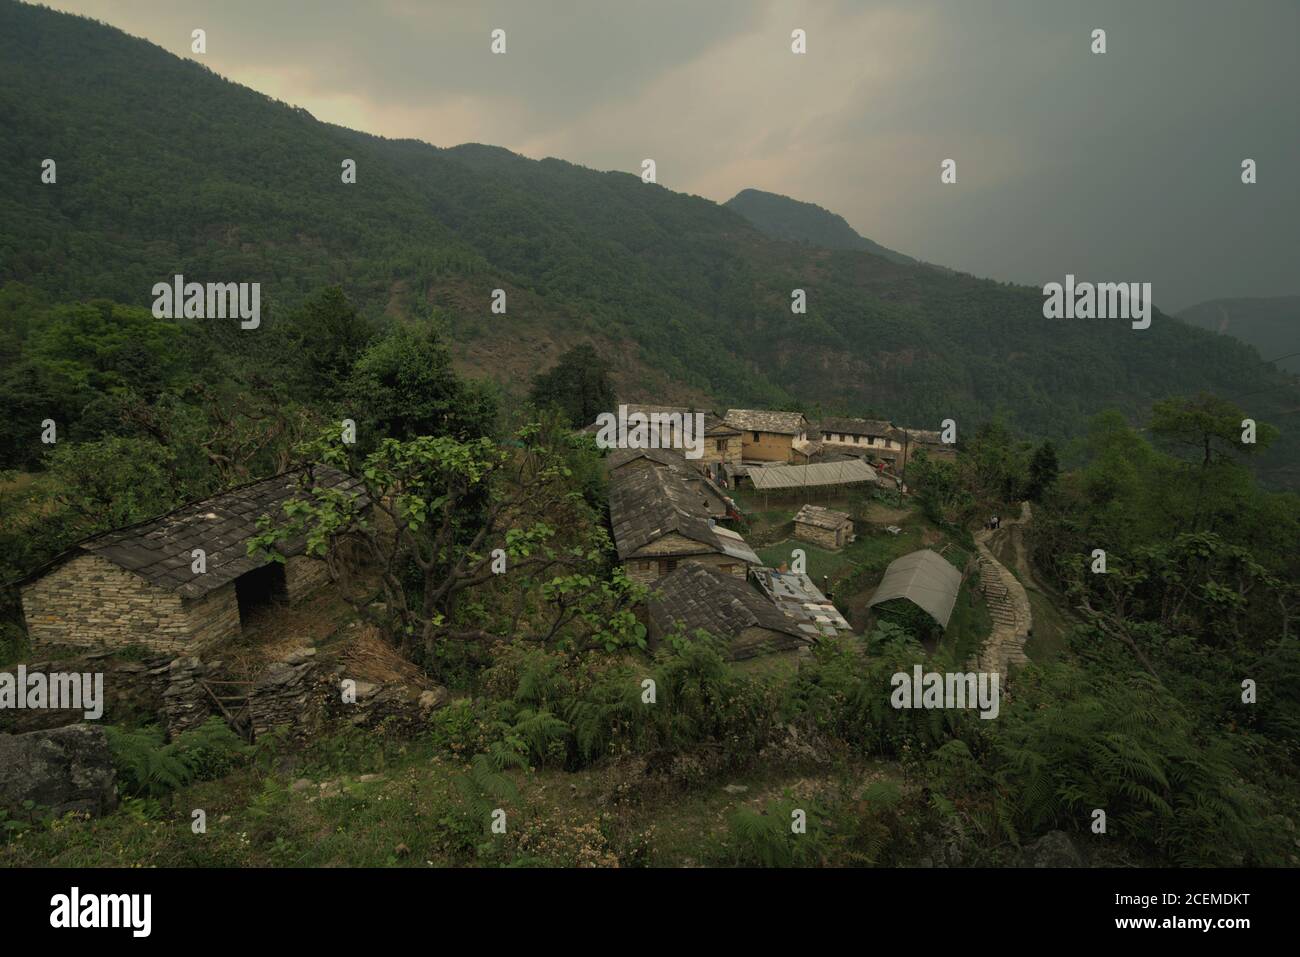 Vue sur le village agricole et écotouristique de Sidhane, Bhaudari Tamagi, sur le versant de la montagne Panchase dans le district de Kaski, Gandaki Pradesh, Népal. Banque D'Images